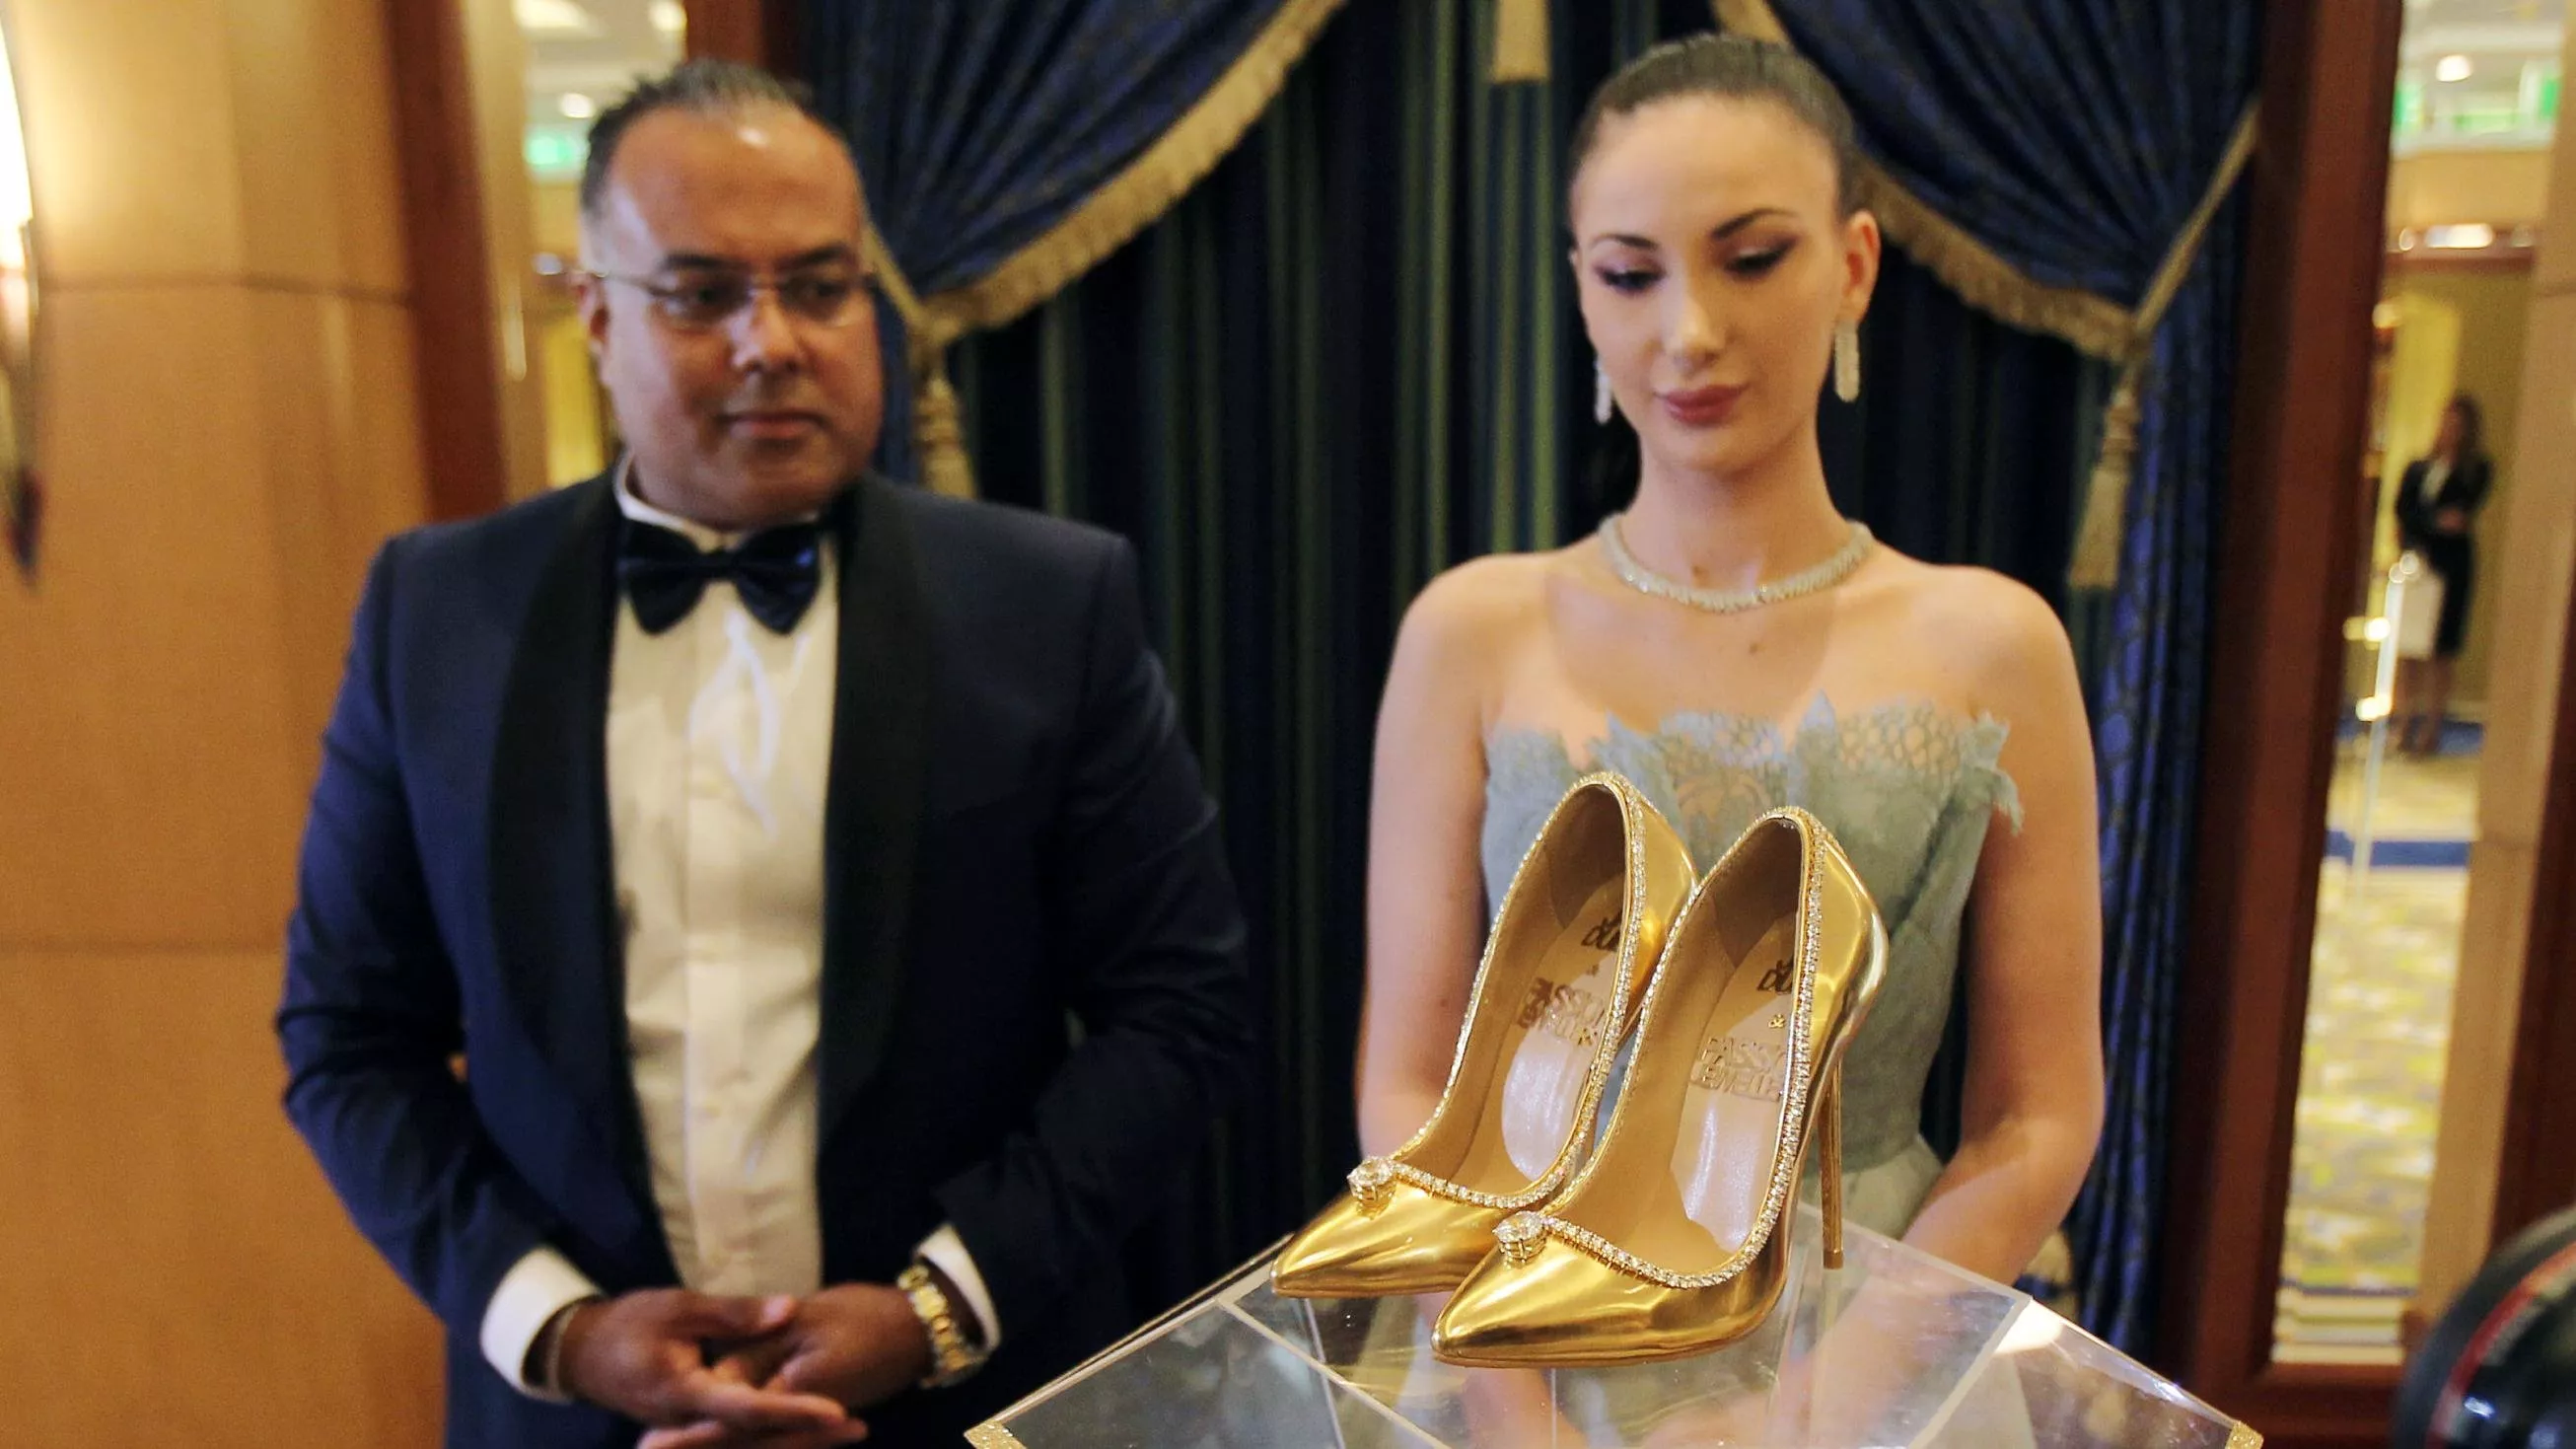 صور أغلى حذاء في العالم: يبلغ ثمنه 17 مليون دولار وموجود في دبي